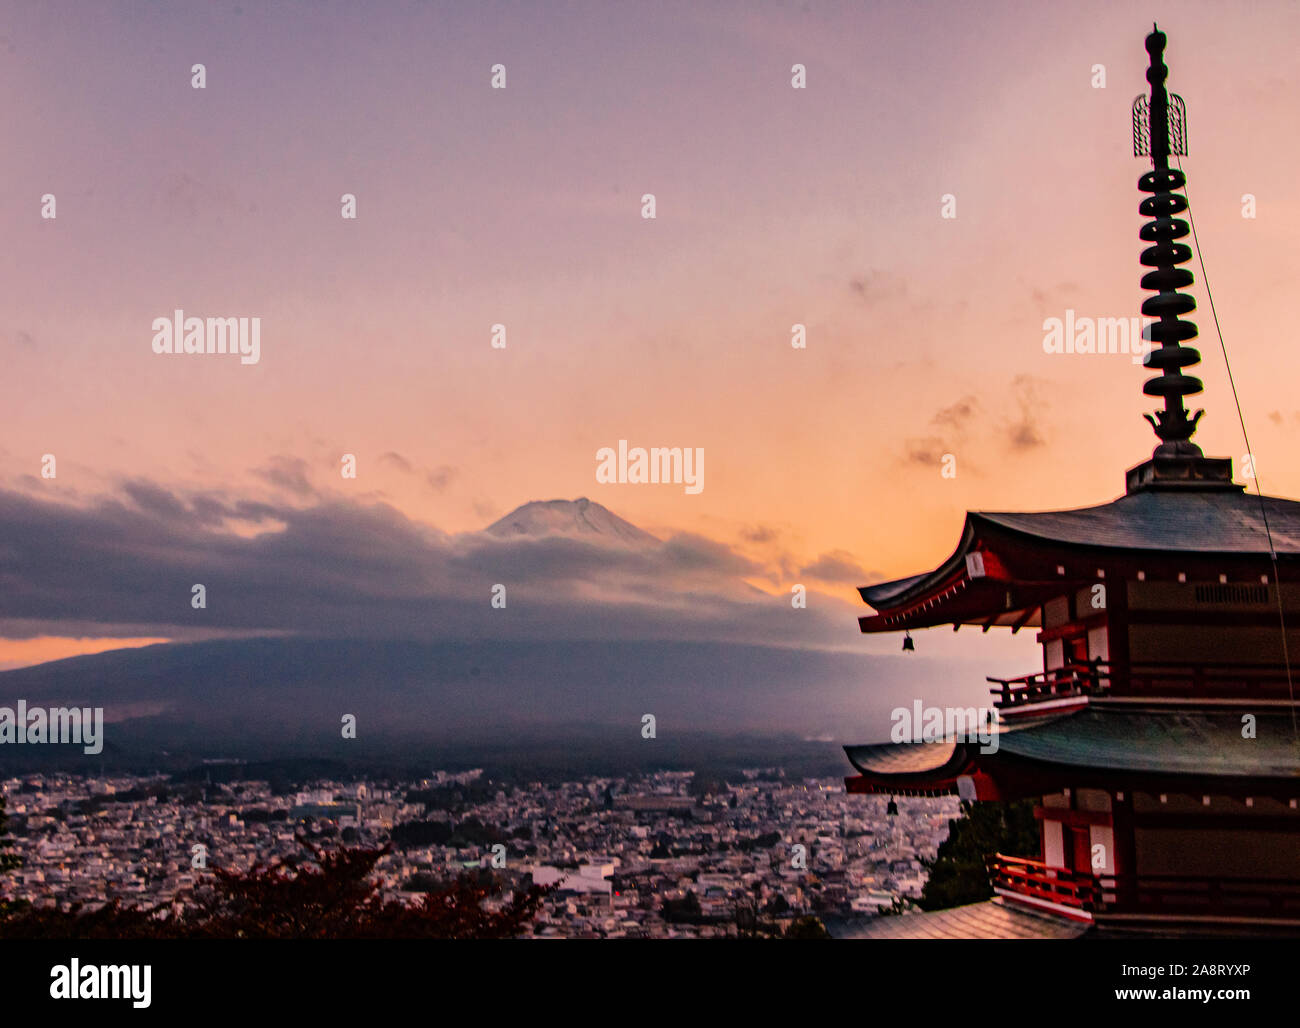 Chureito pagoda, Mount Fuji views in Fujiyoshida Stock Photo